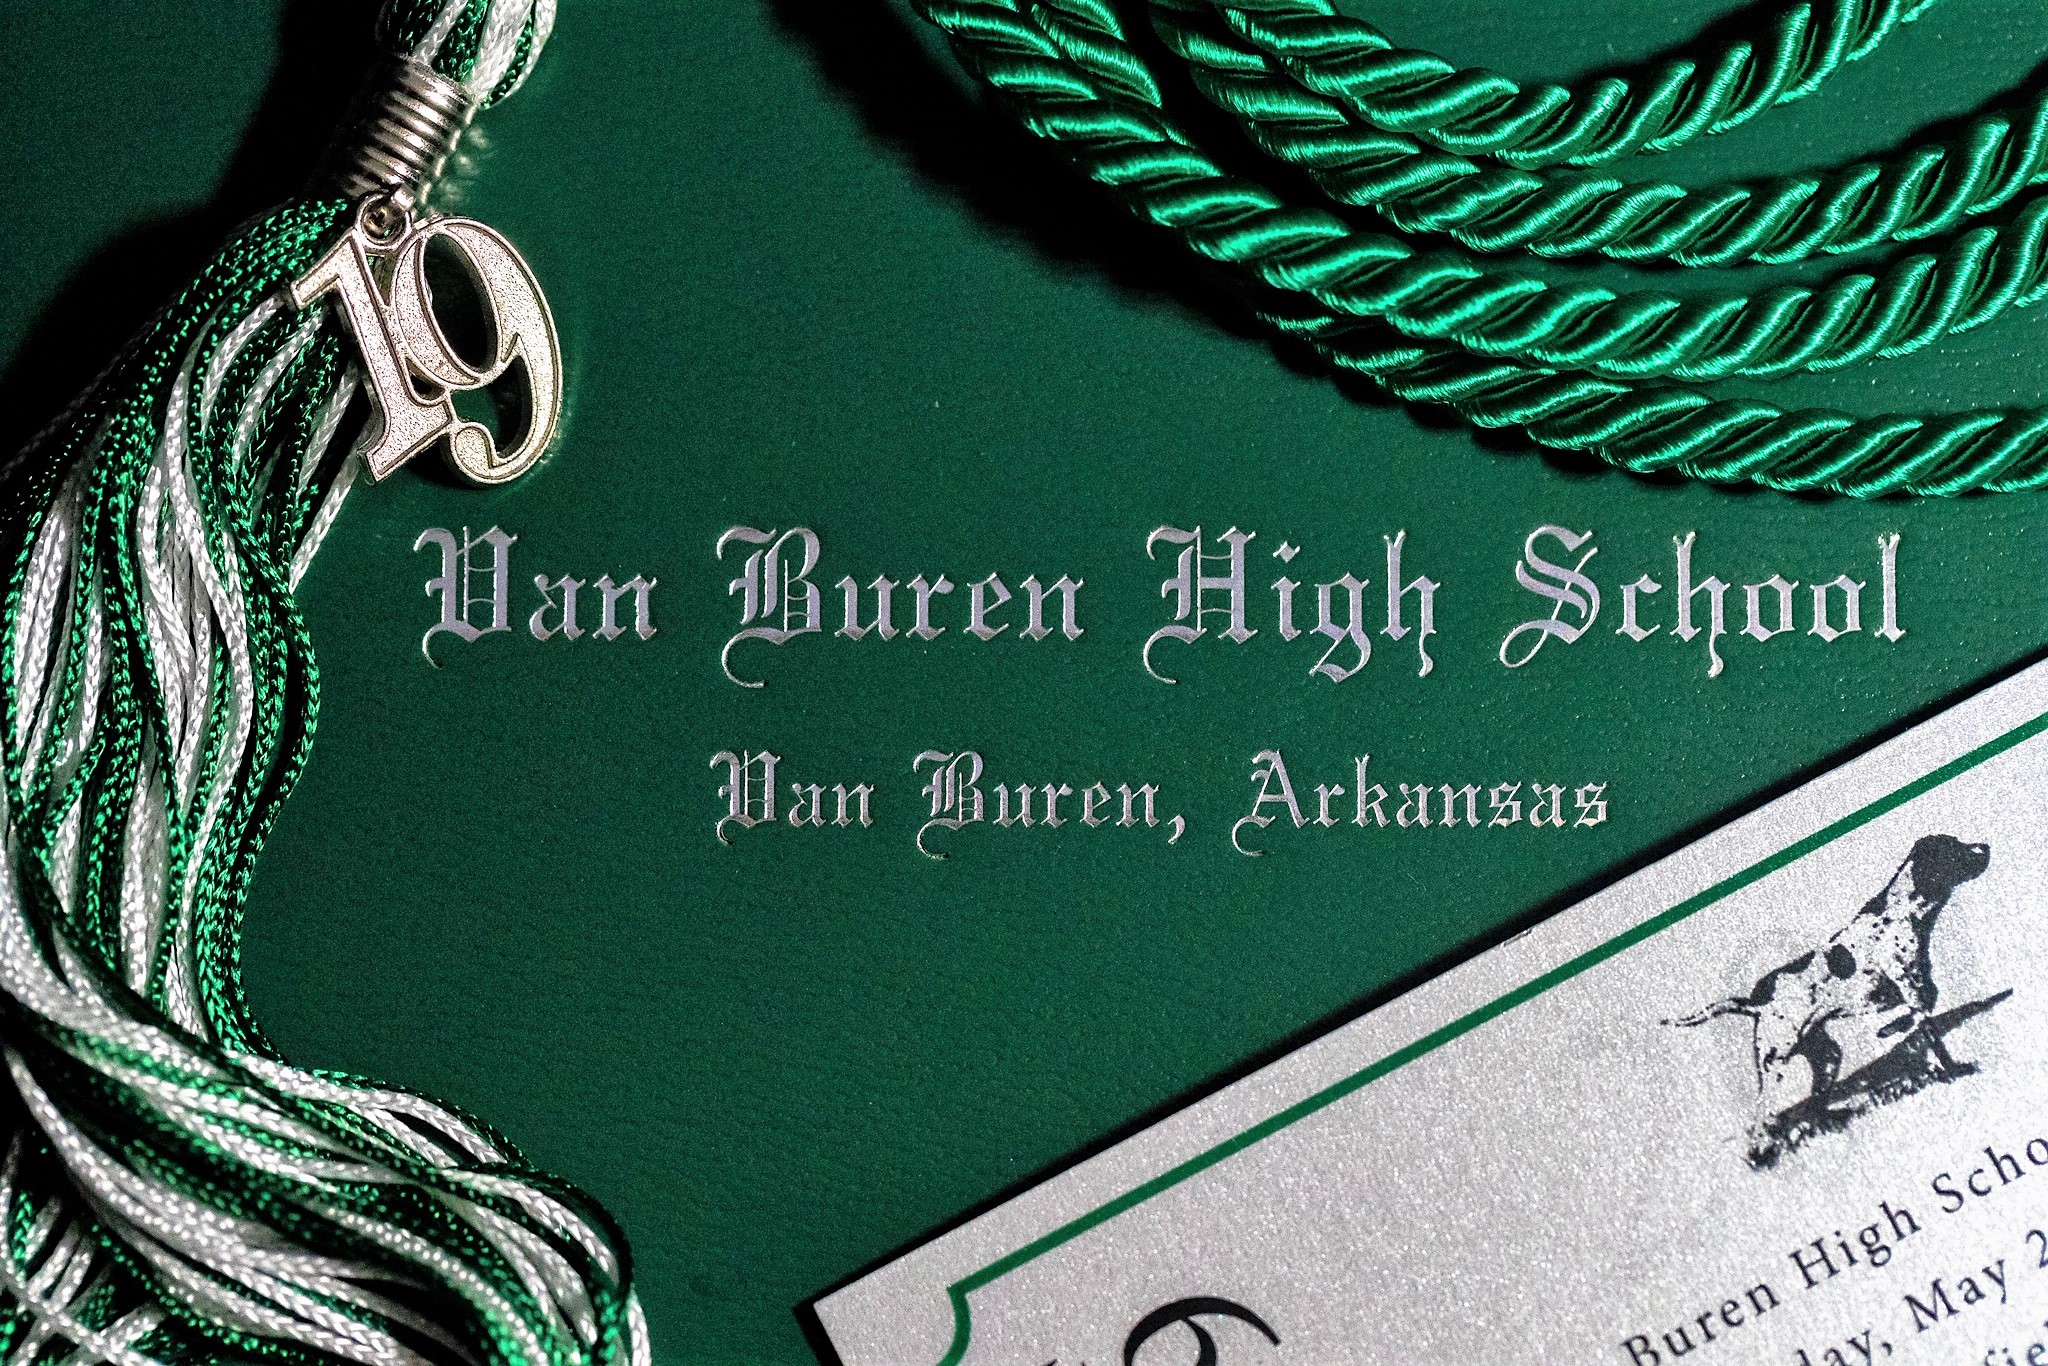 Van Buren High School Graduation set for May 24